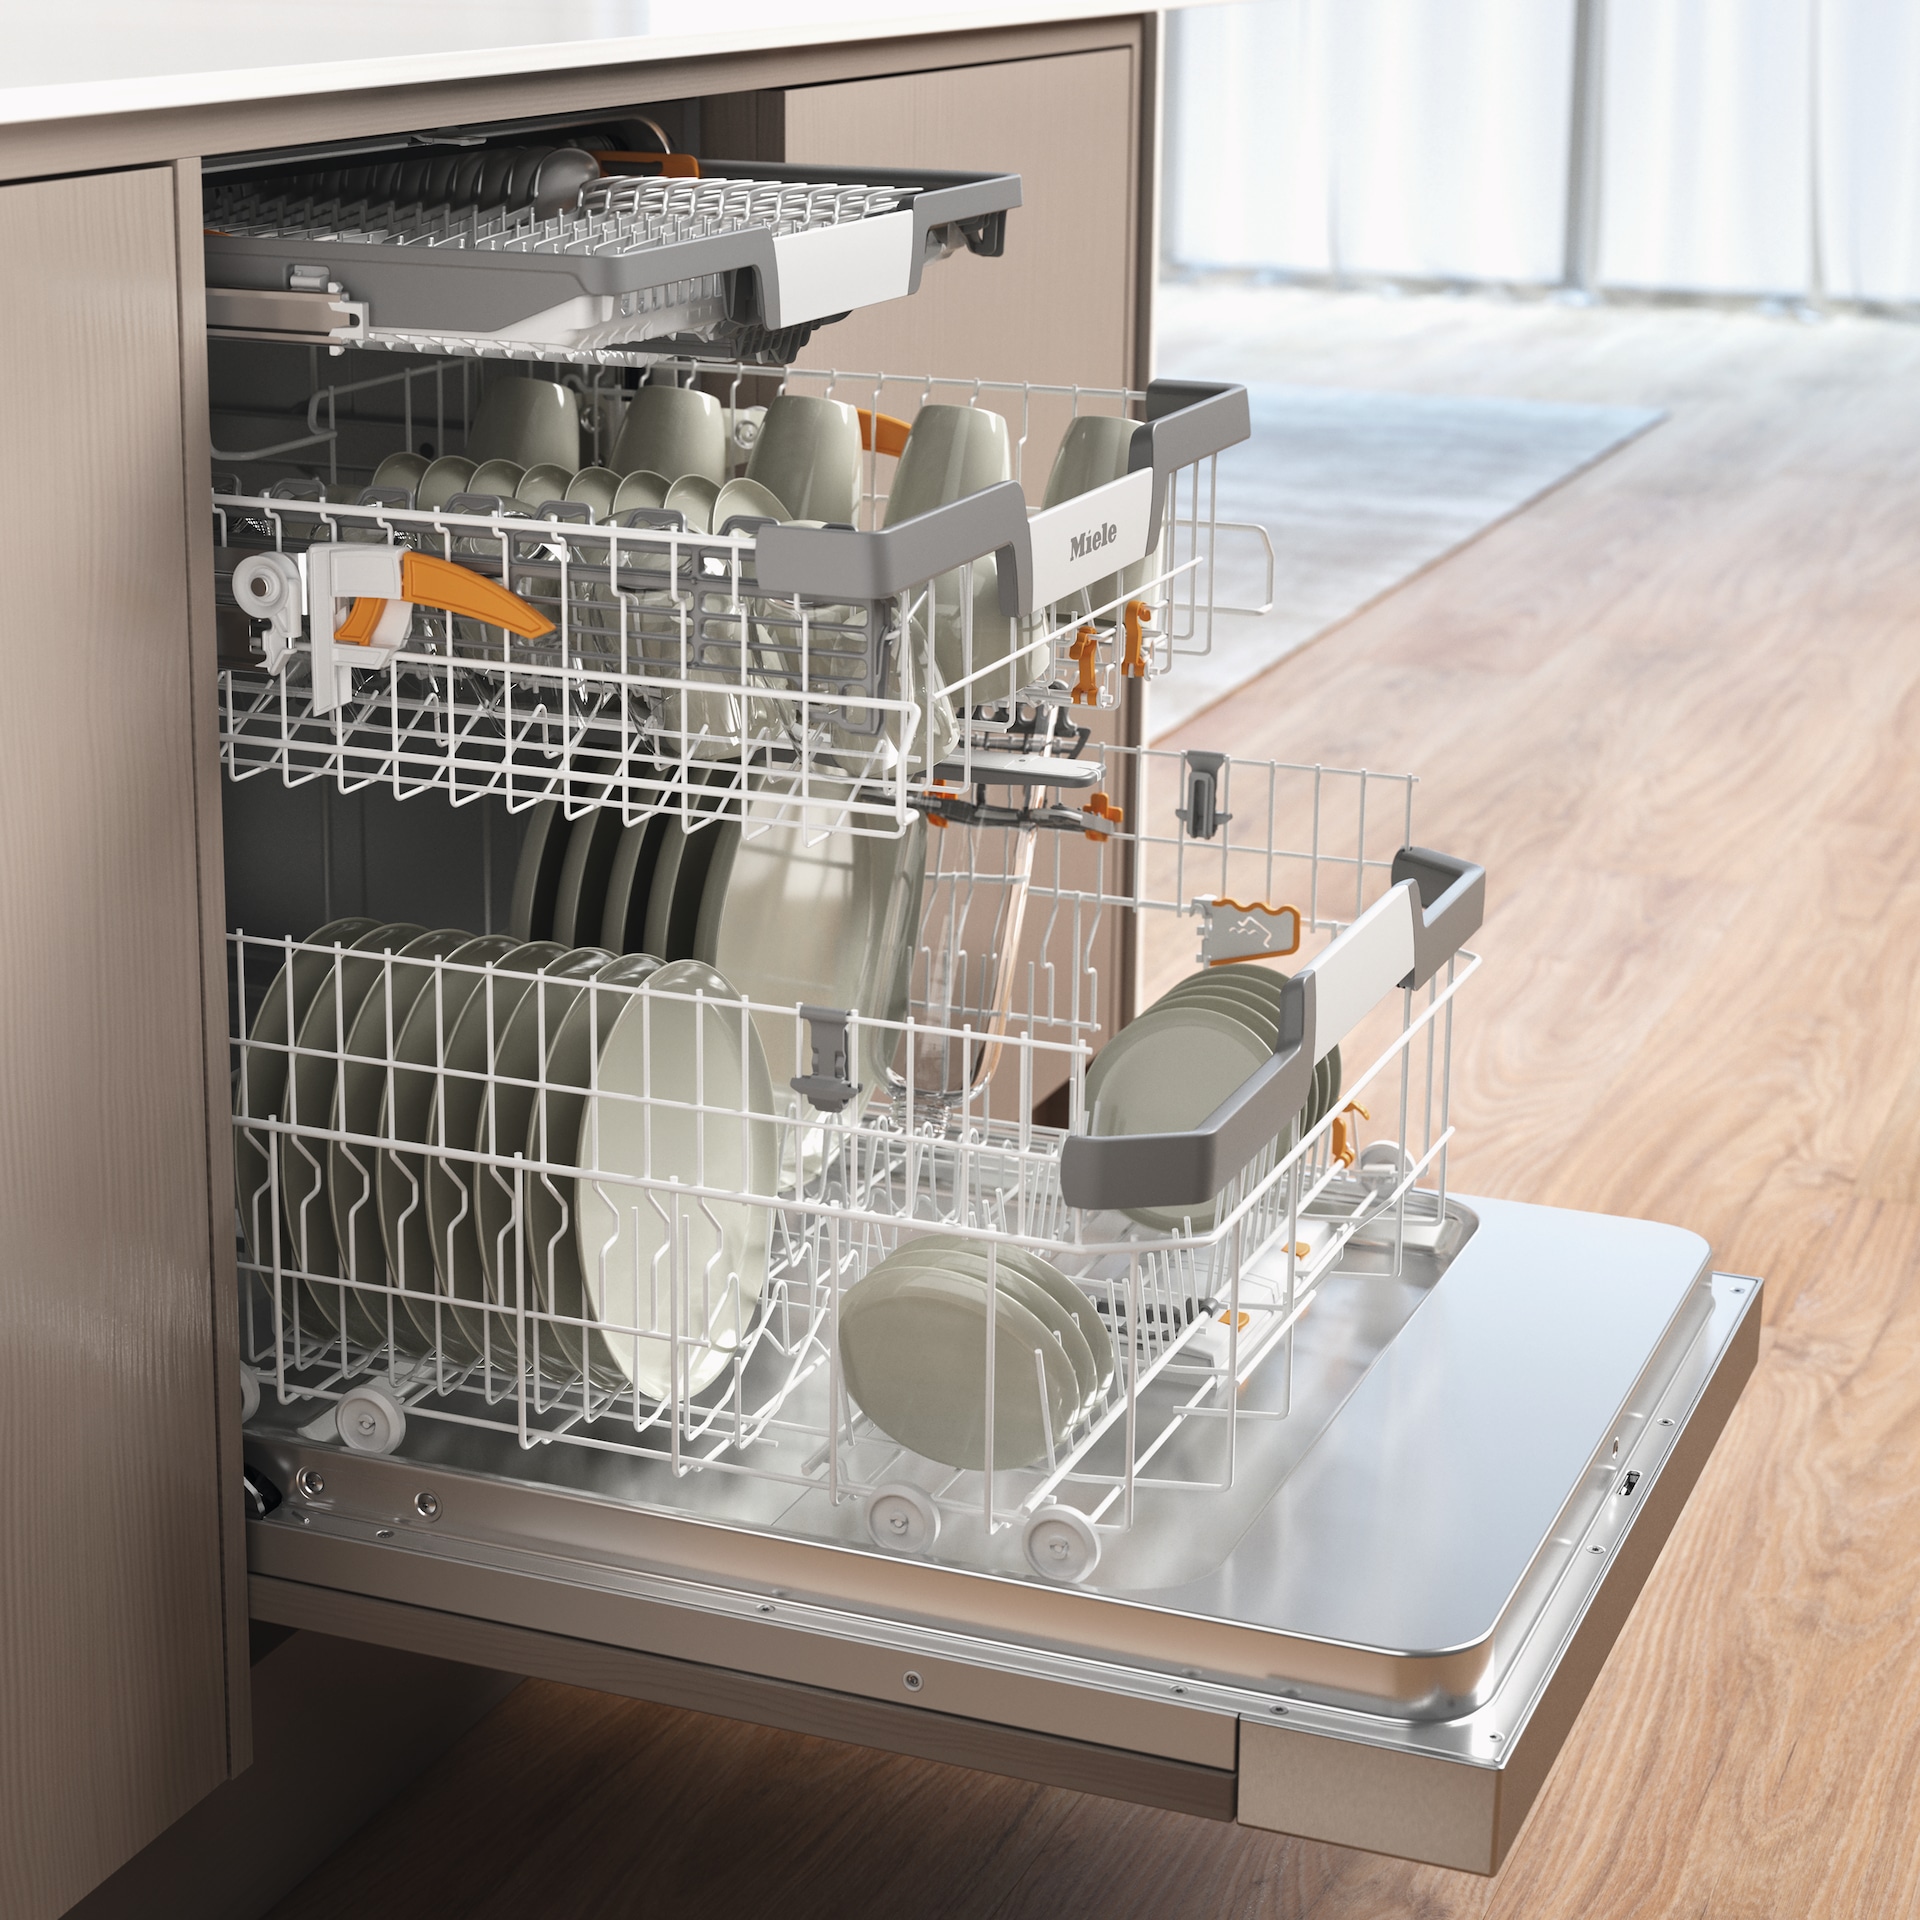 Dishwashers - G 7210 SCi - 3